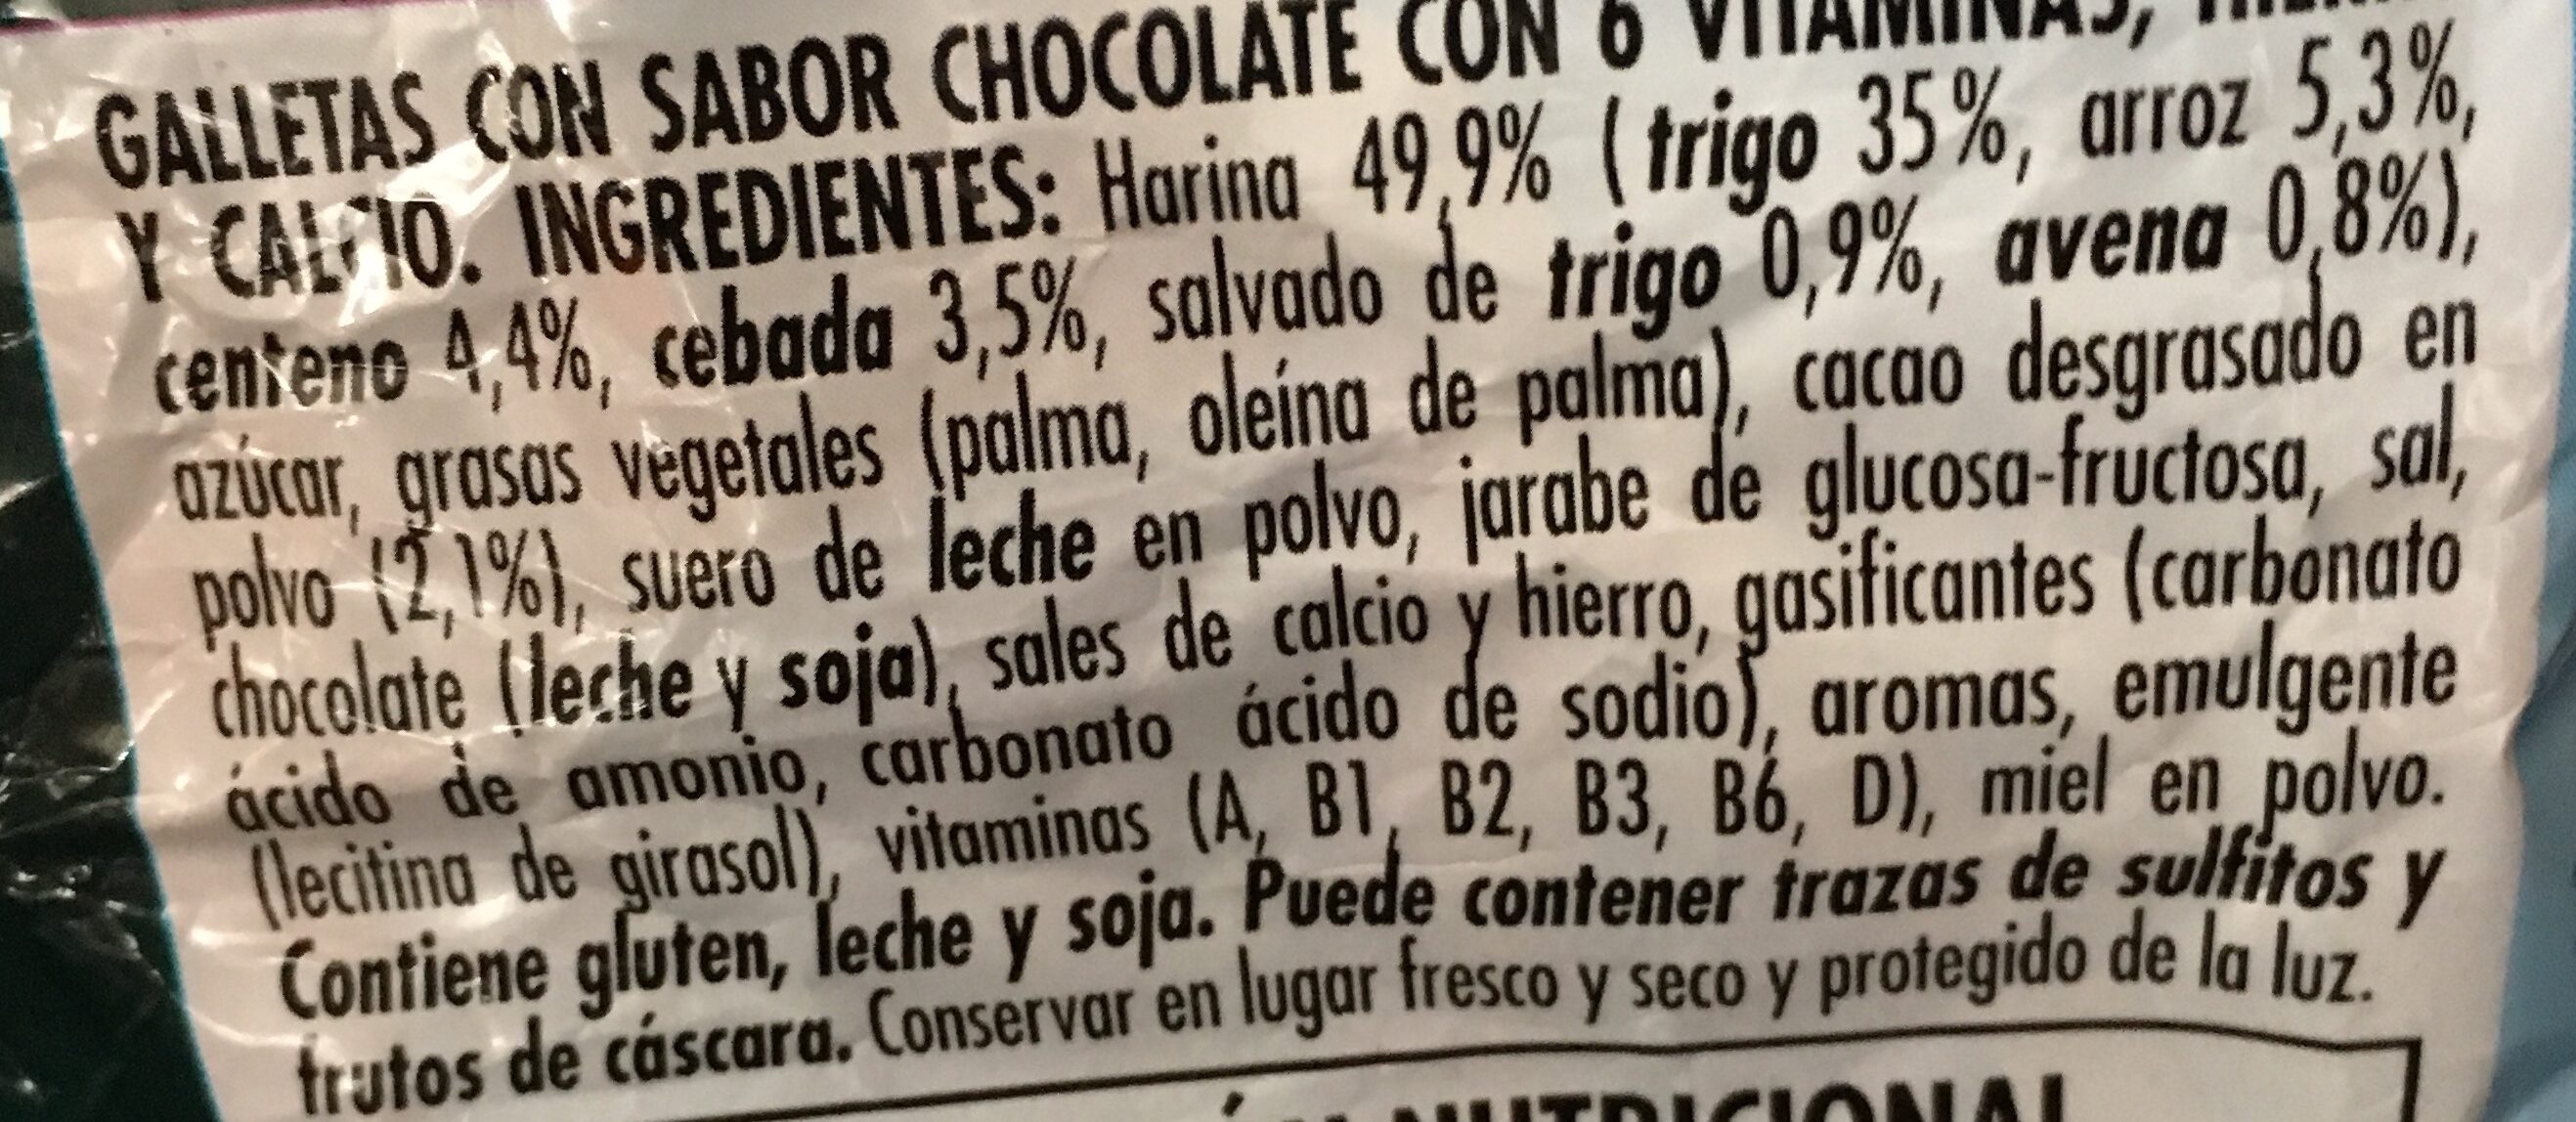 Galletas Con Sabor Chocolate Con 6 Vitaminas Hierro Y Calcio. - Ingredients - es